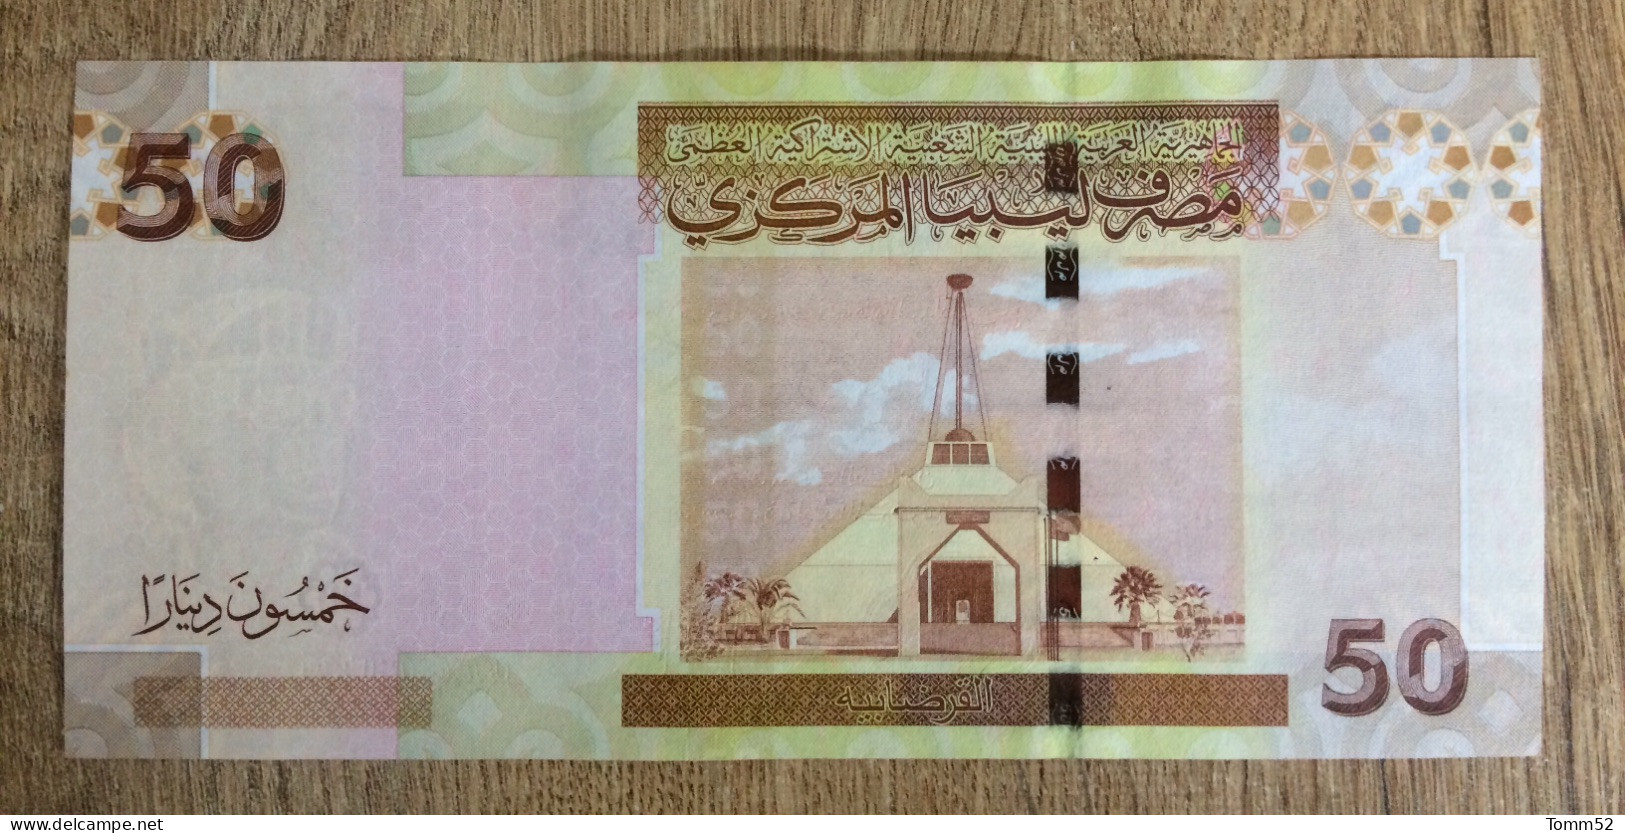 LIBYA 50 Dinars UNC - Libyen